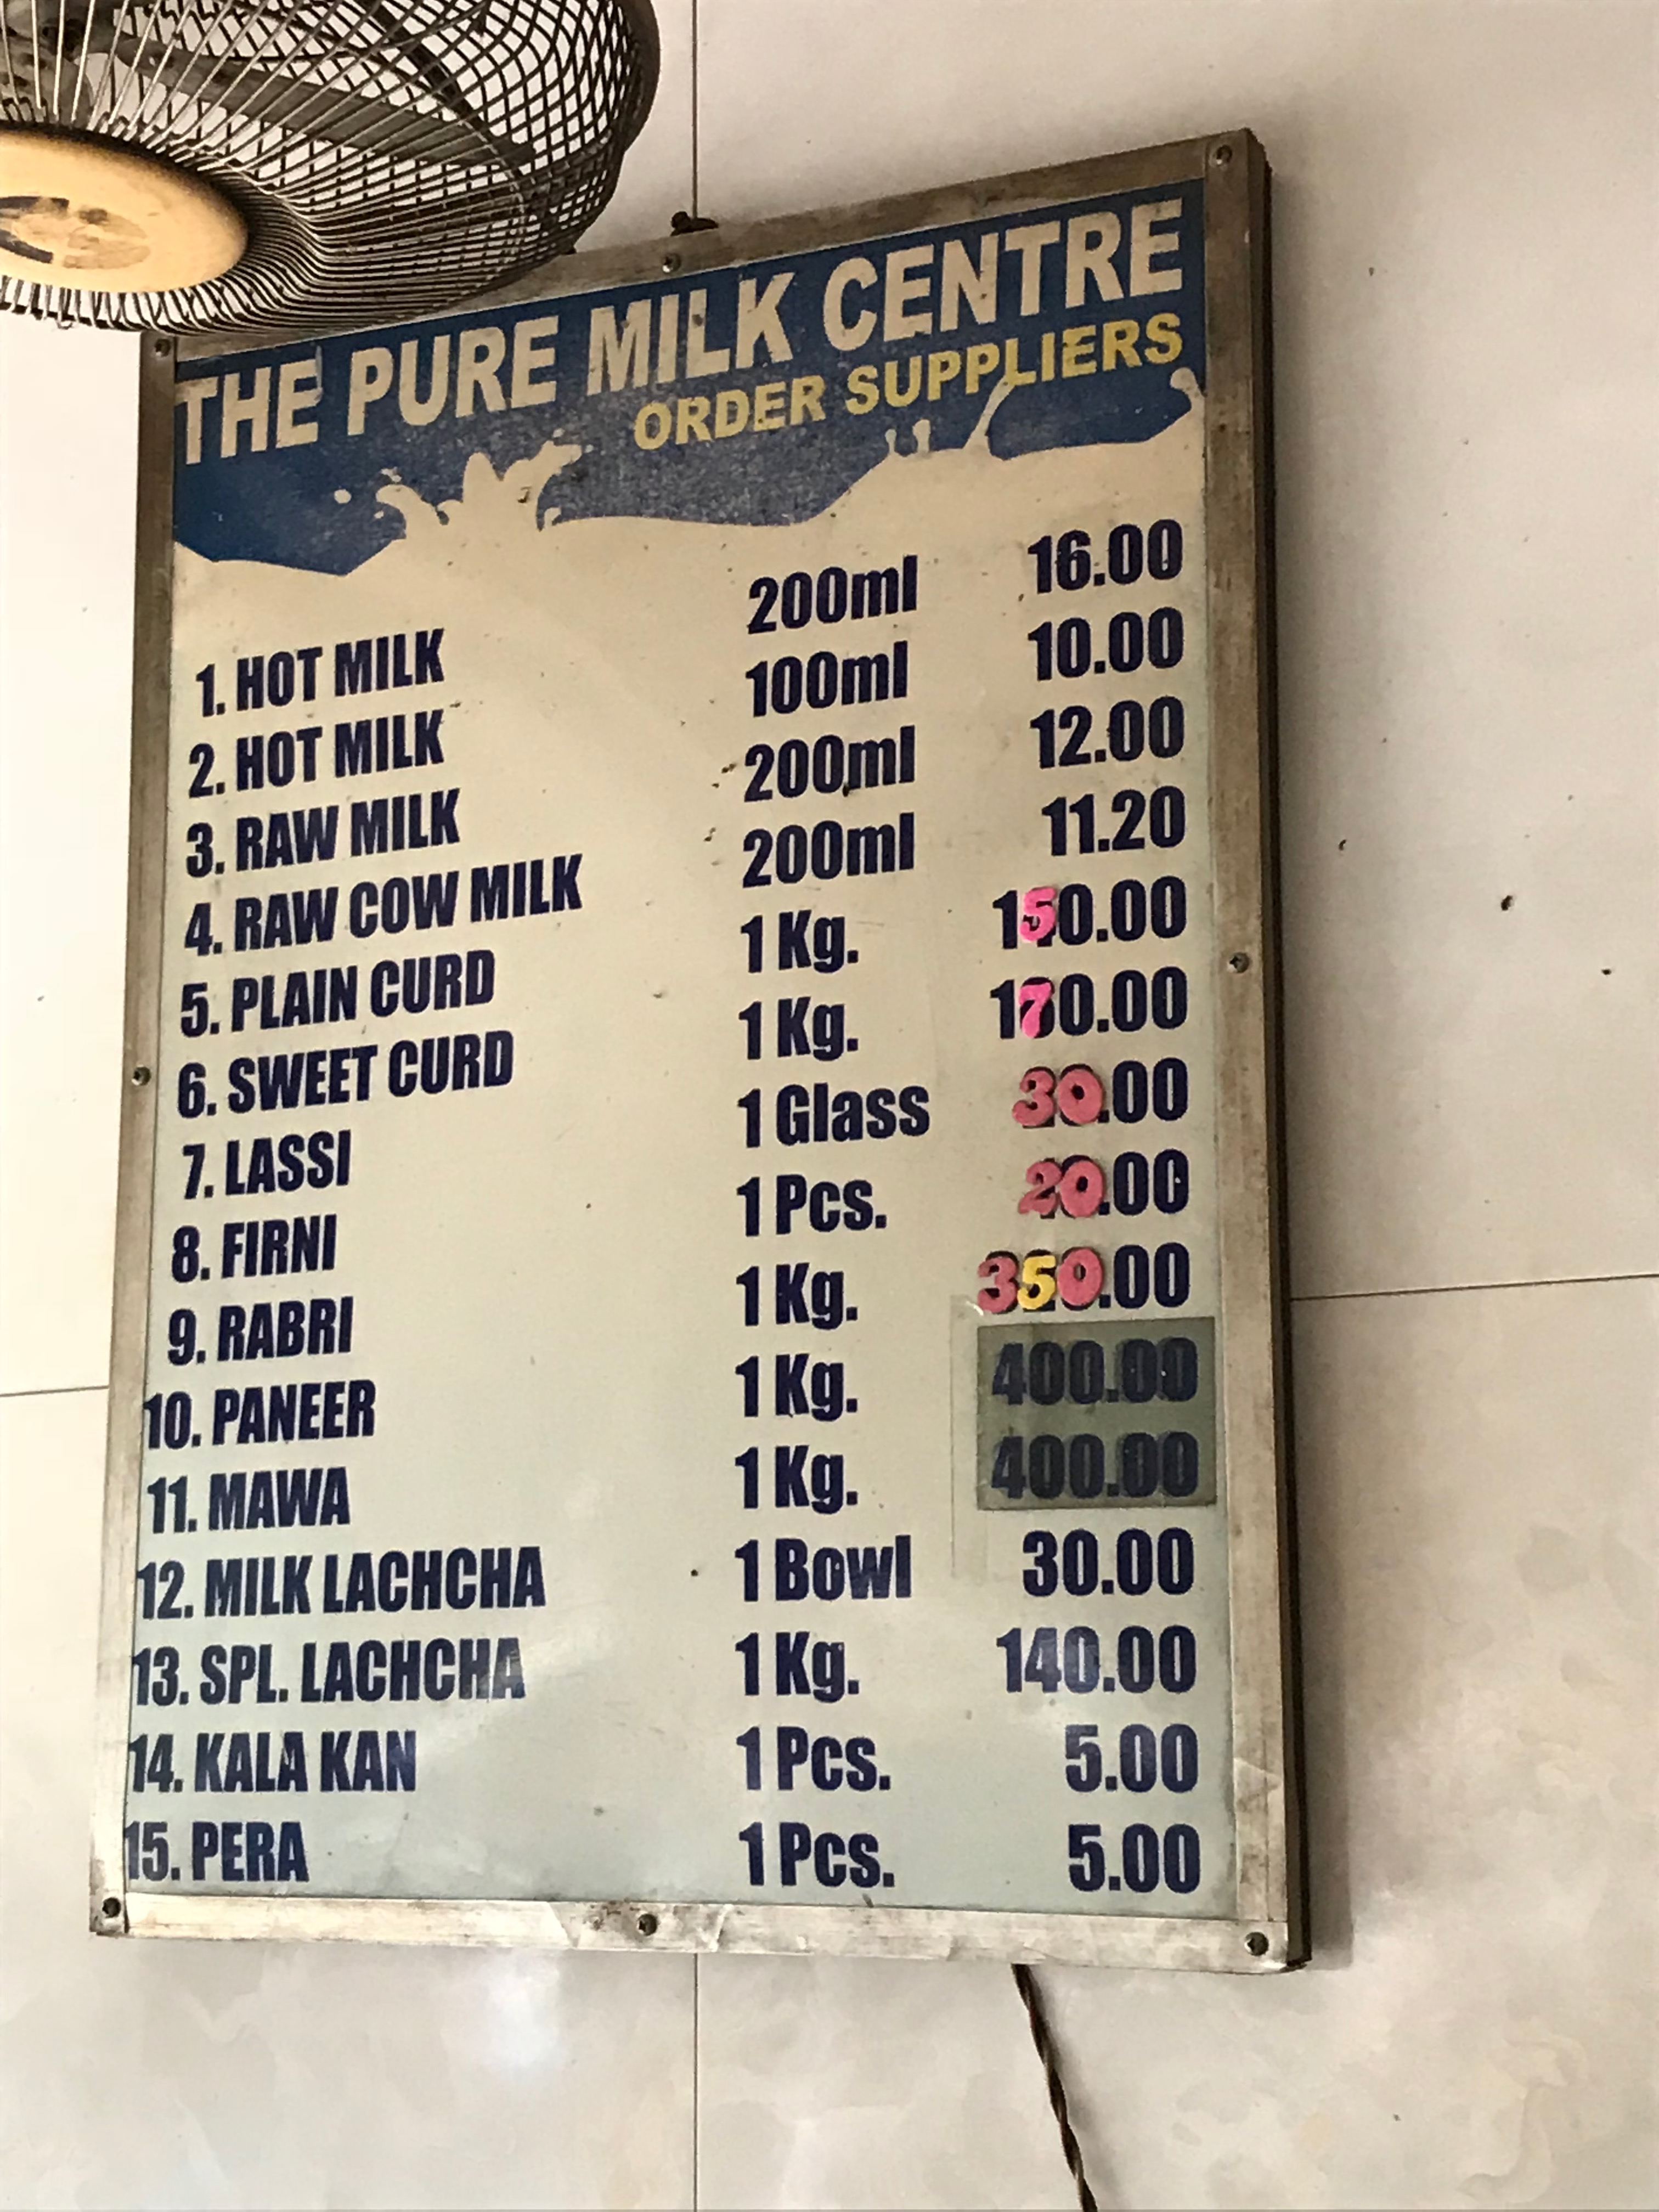 The Pure Milk Centre